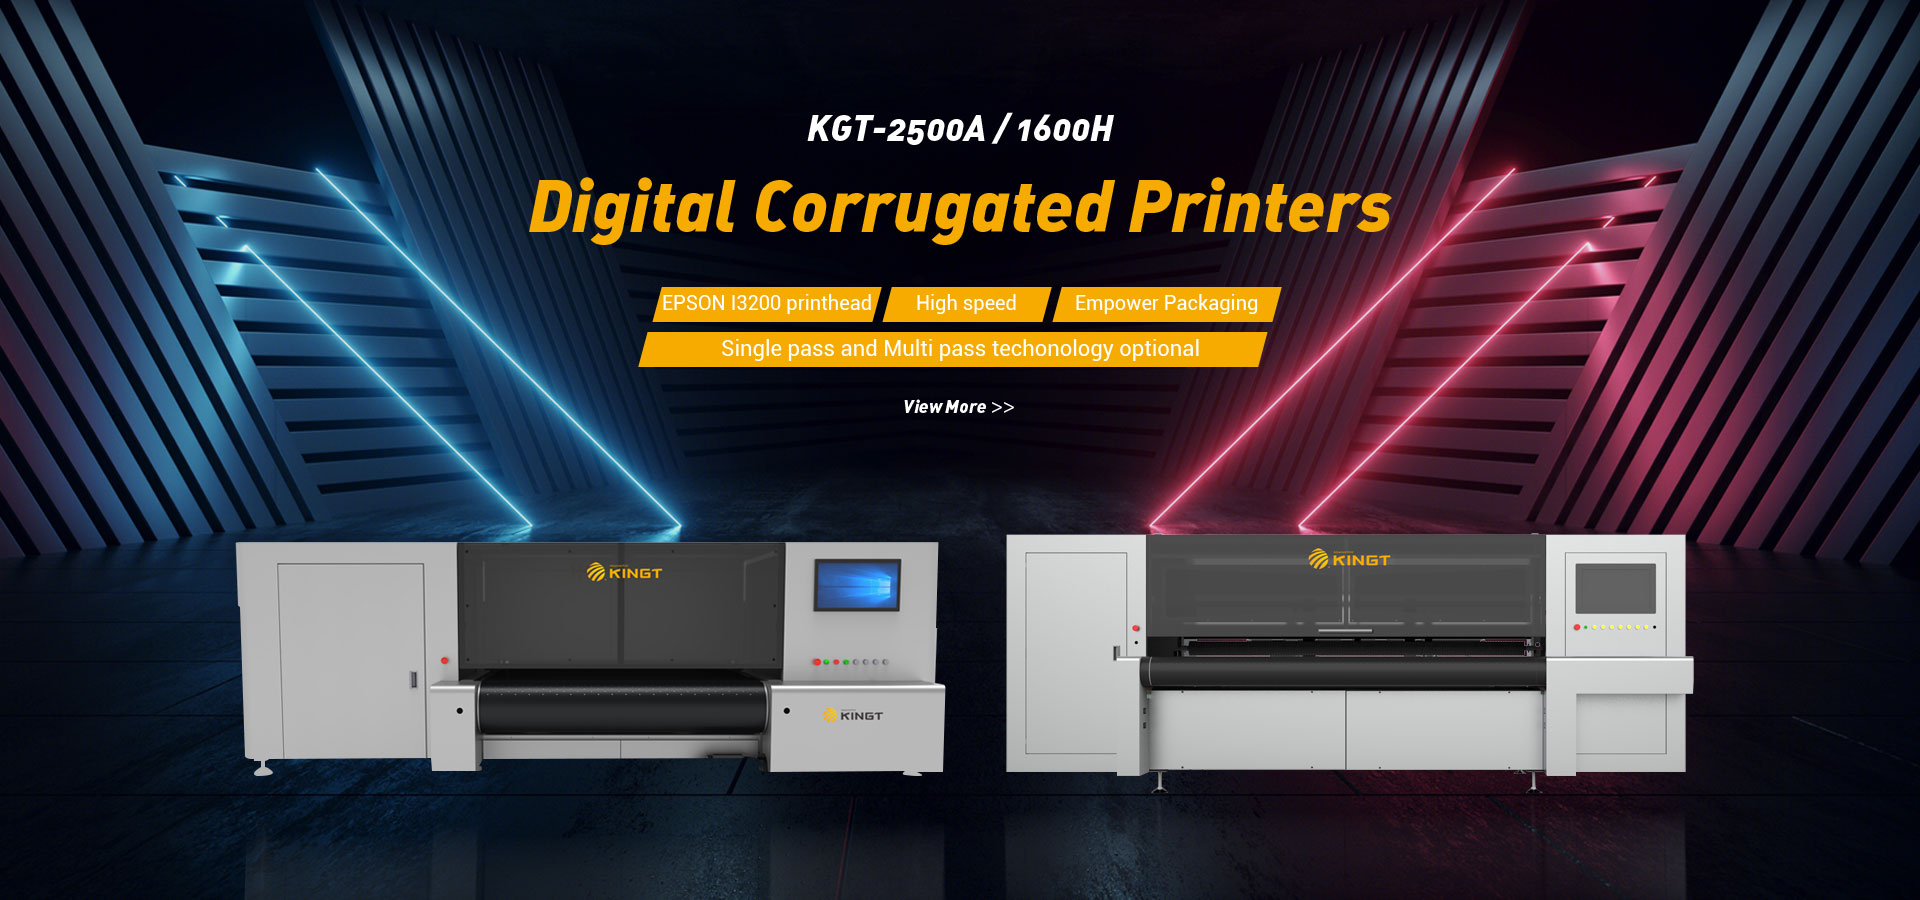 KGT-2500A Scanning Digital Corrugated Printer